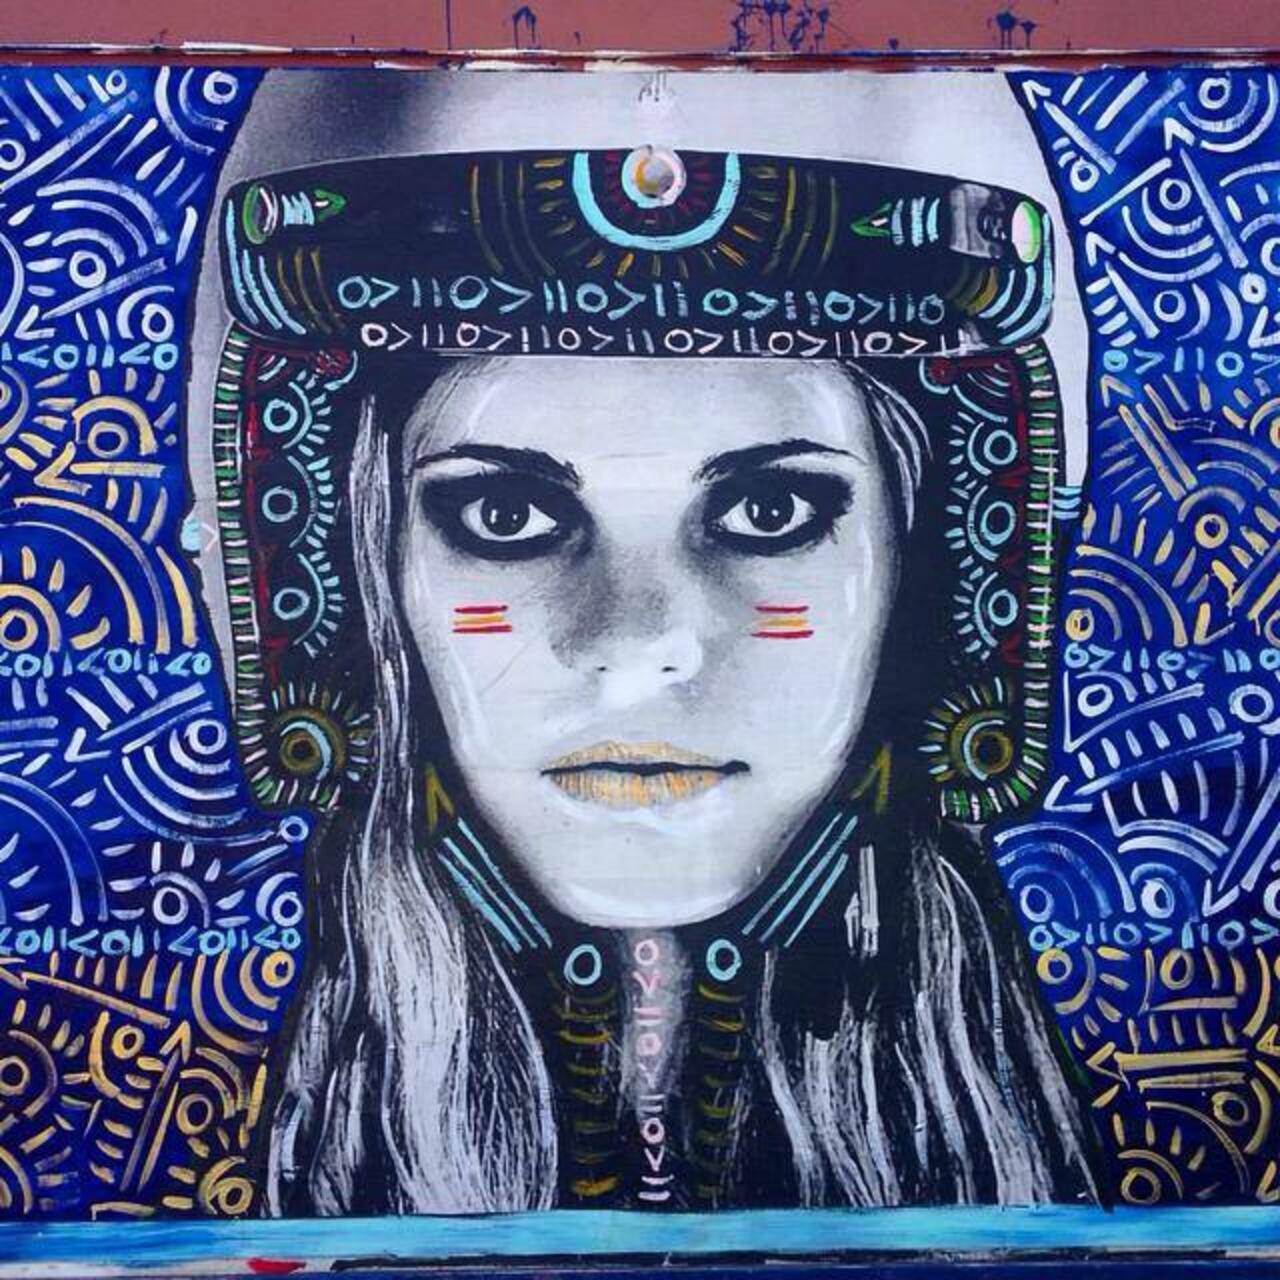 Street Art by Kelcey Fisher in LA
Photo by djcatnap

#art #arte #graffiti #streetart http://t.co/7Svu2uWpEr